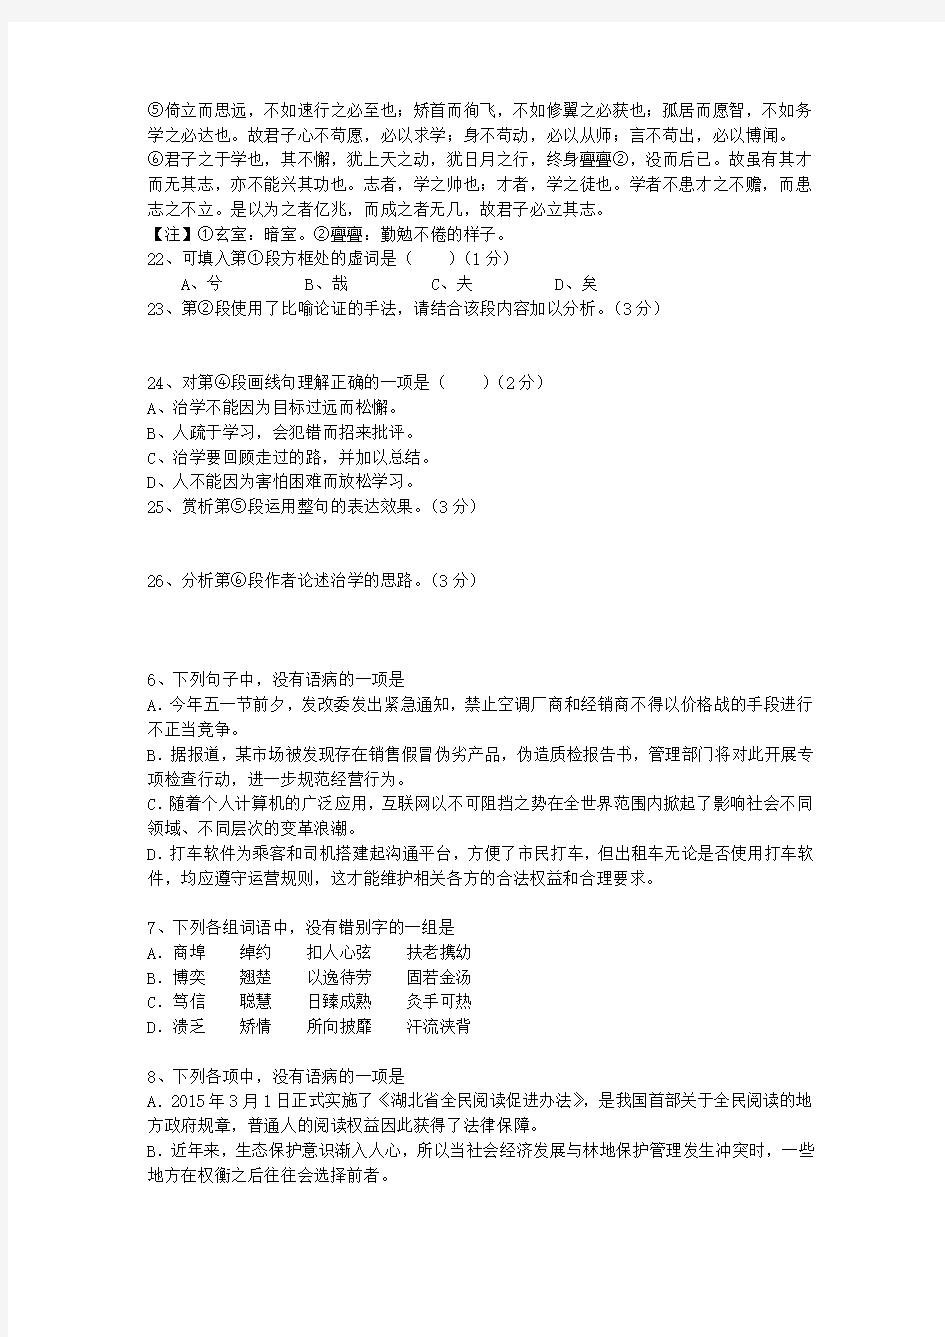 2014青海省高考语文试卷及参考答案考试技巧、答题原则